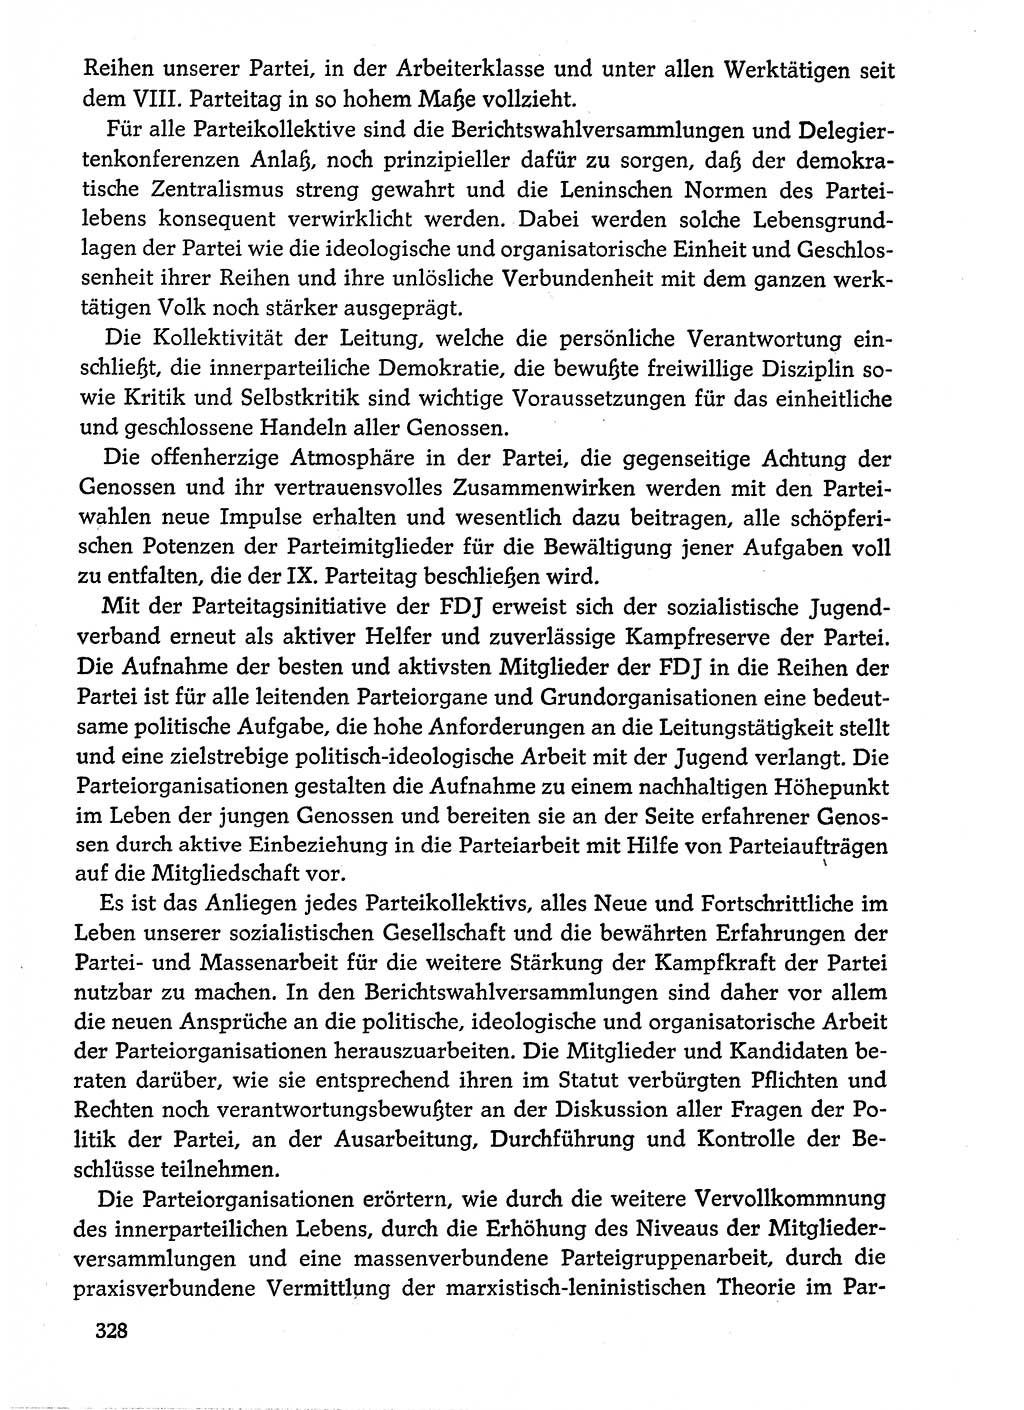 Dokumente der Sozialistischen Einheitspartei Deutschlands (SED) [Deutsche Demokratische Republik (DDR)] 1974-1975, Seite 328 (Dok. SED DDR 1978, Bd. ⅩⅤ, S. 328)